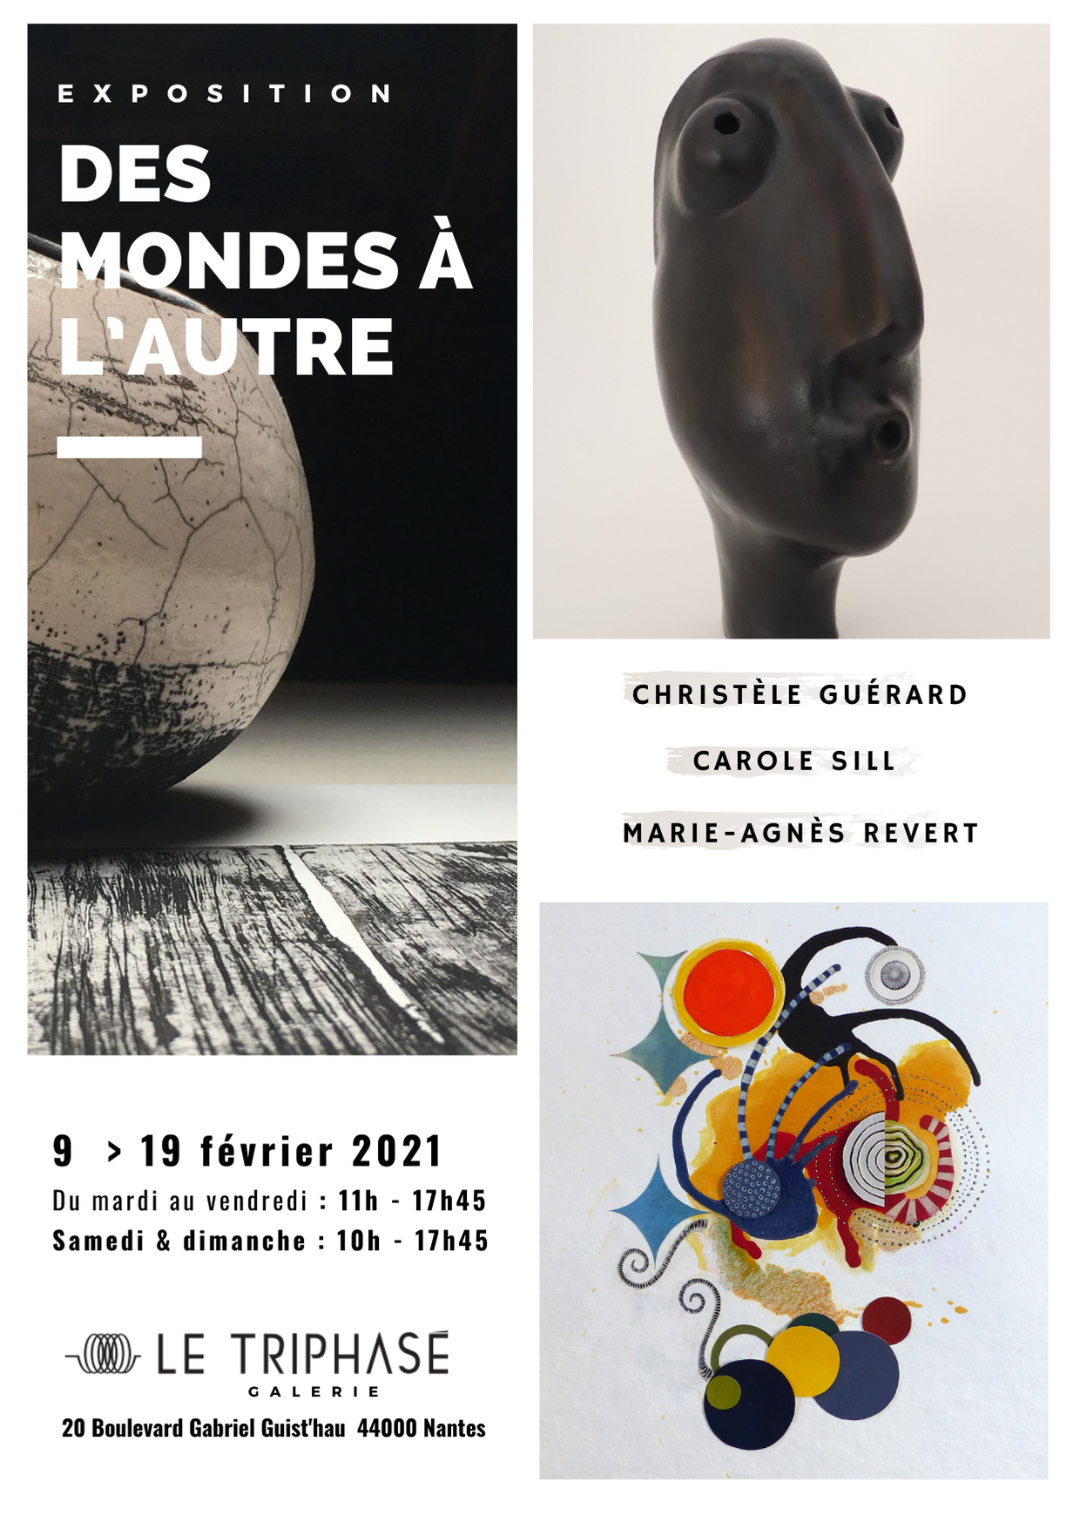 CATALOGUE de l'exposition "DES MONDES A L'AUTRE", 9 > 19 Fév. 2021, Nantes